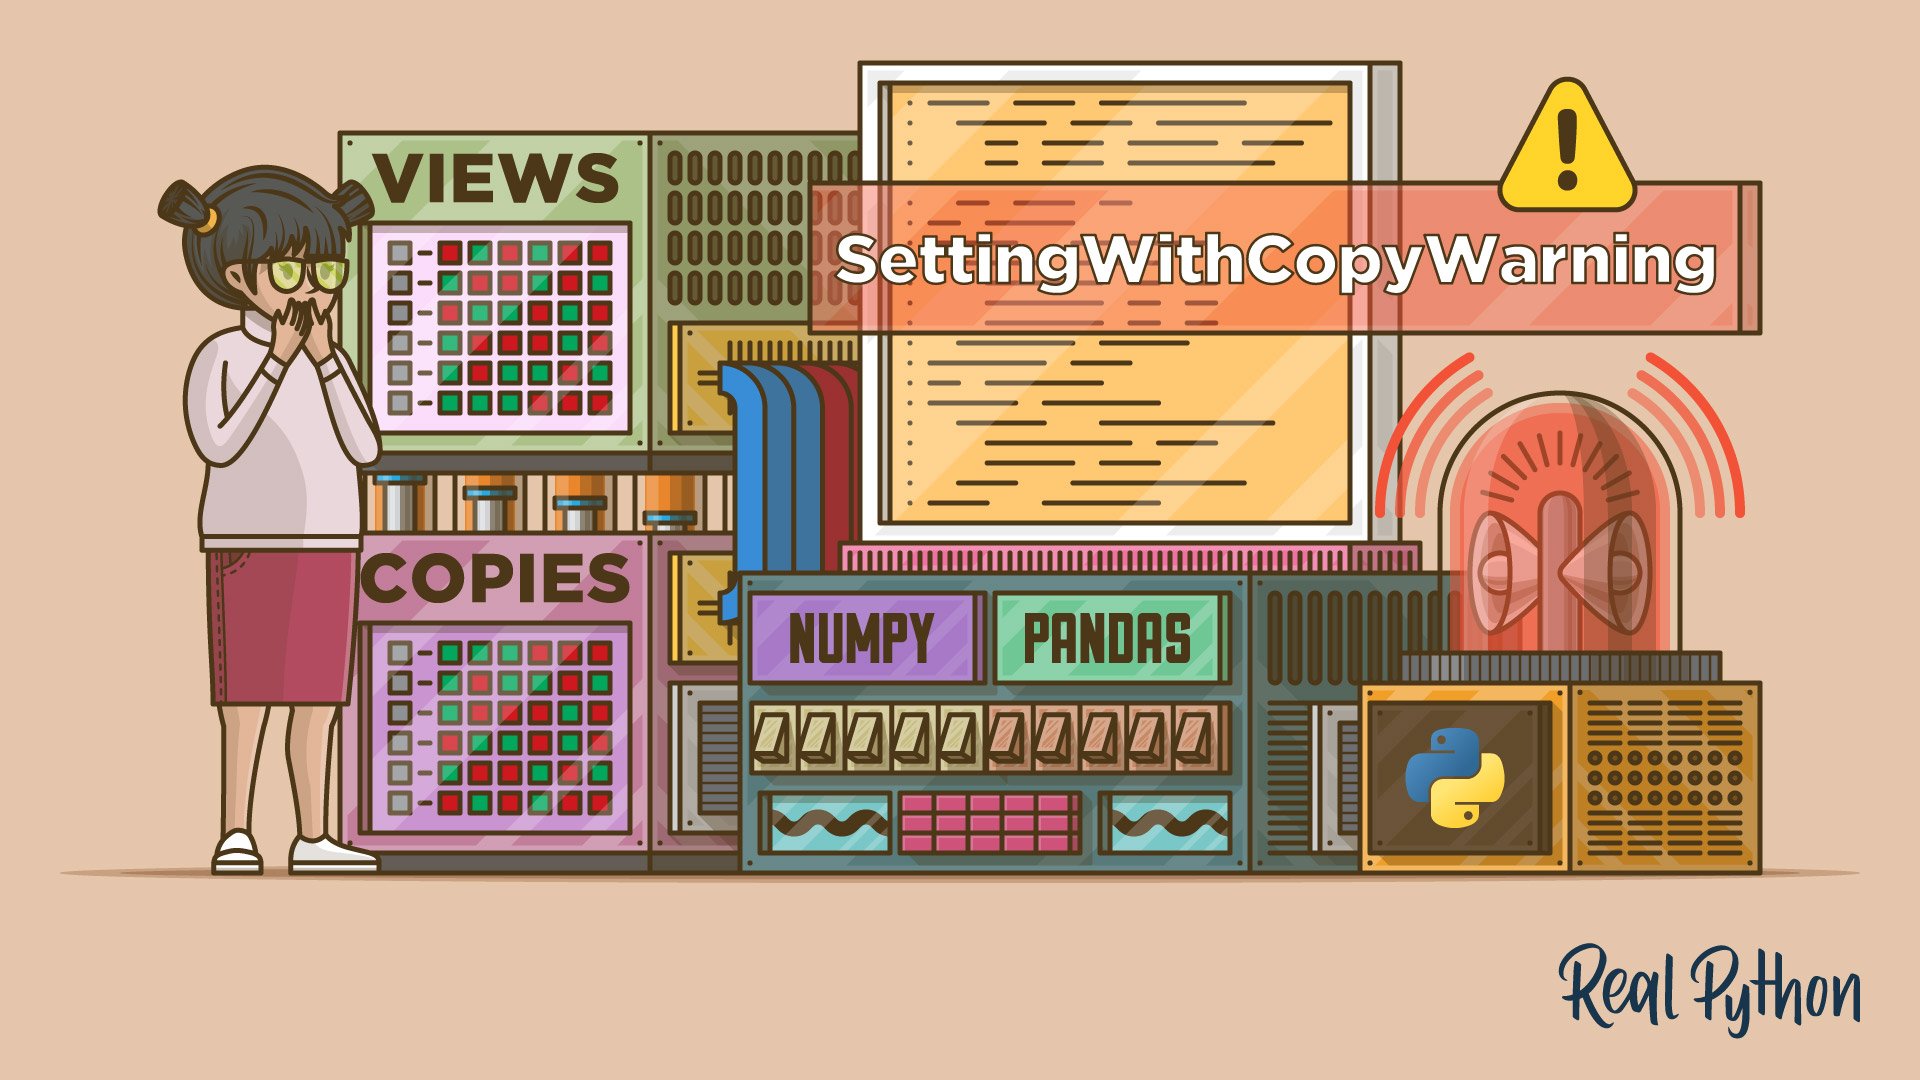 SettingWithCopyWarning in Pandas: Views vs Copies